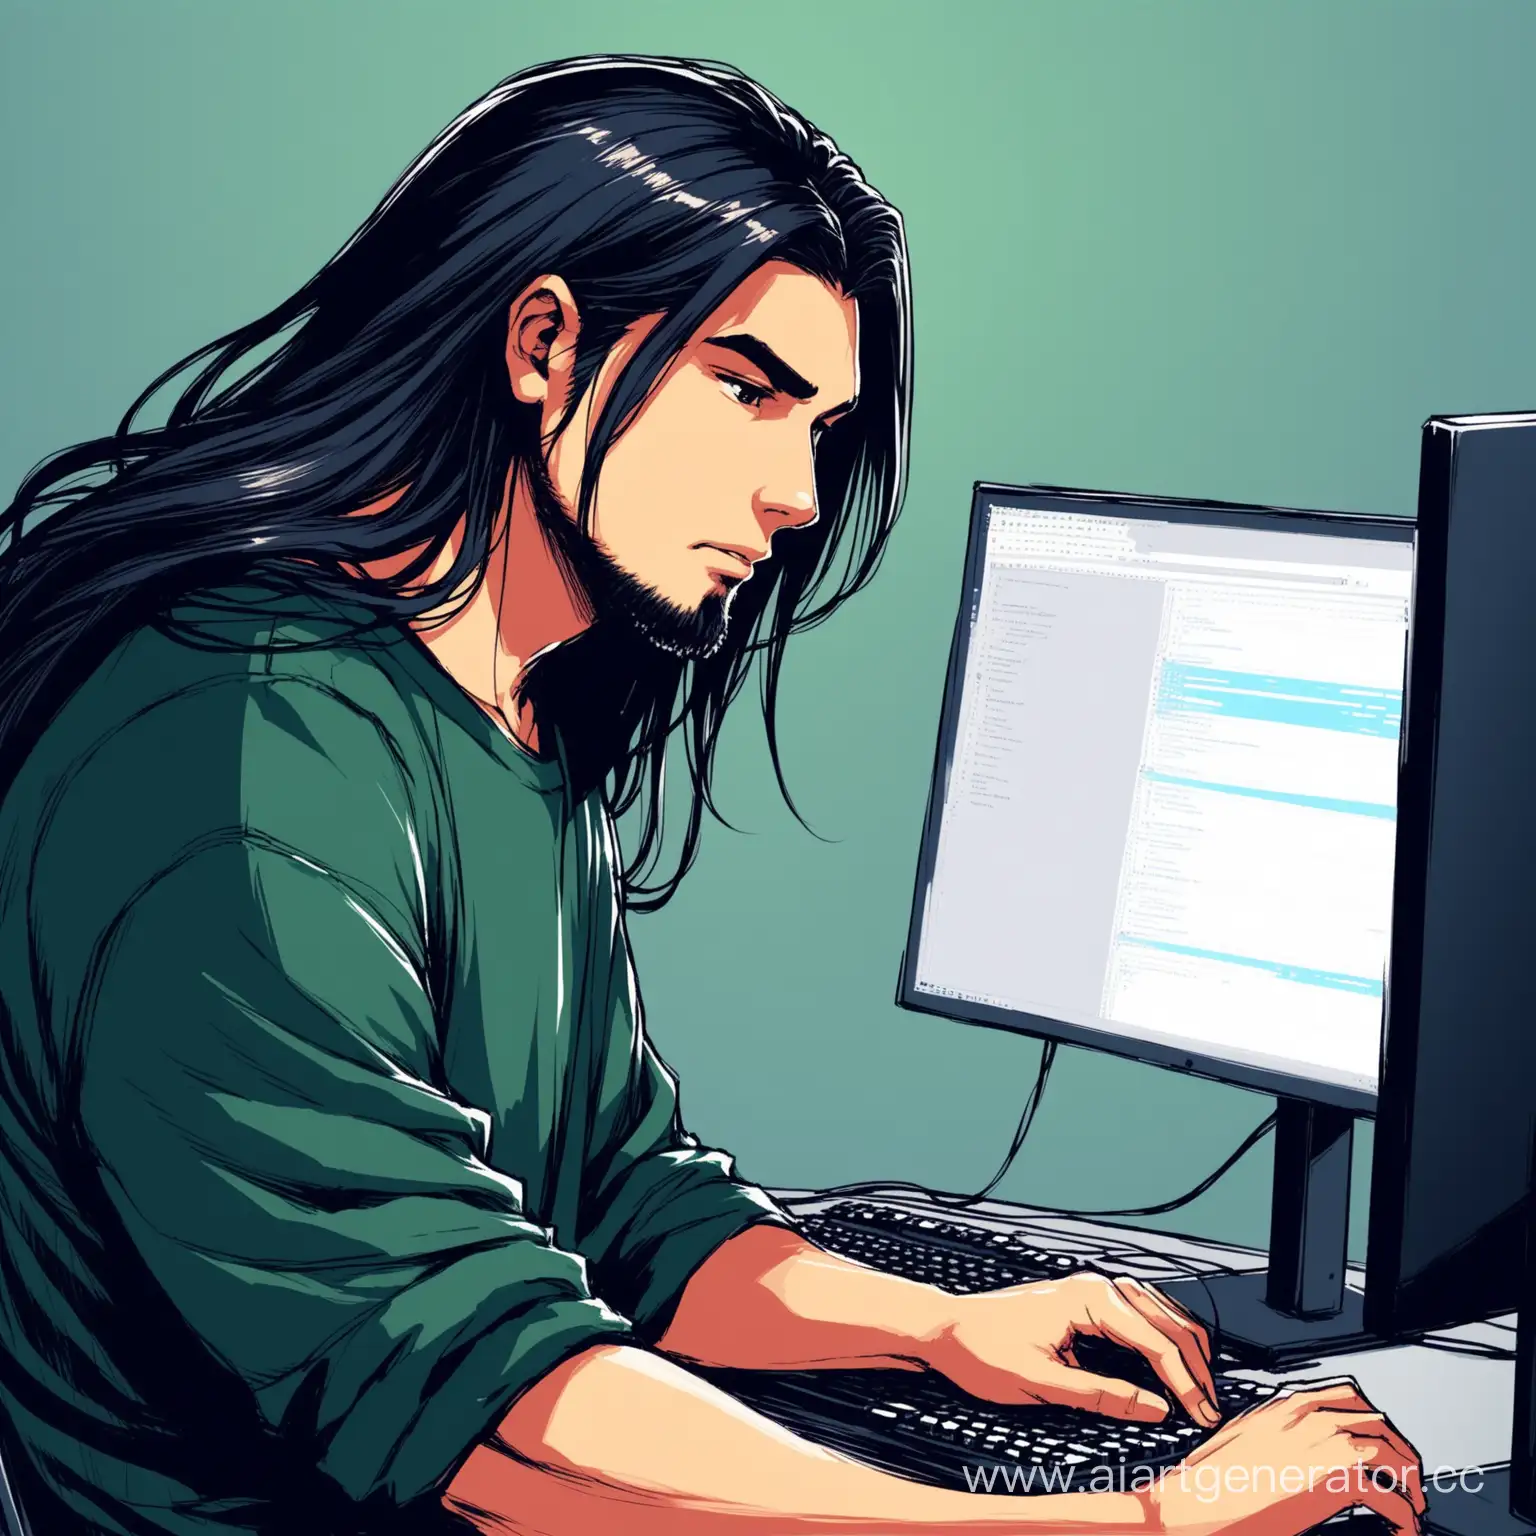 нарисуй парня программиста с длинными по плечи темными волосами за его крутым компьютером где он программирует 